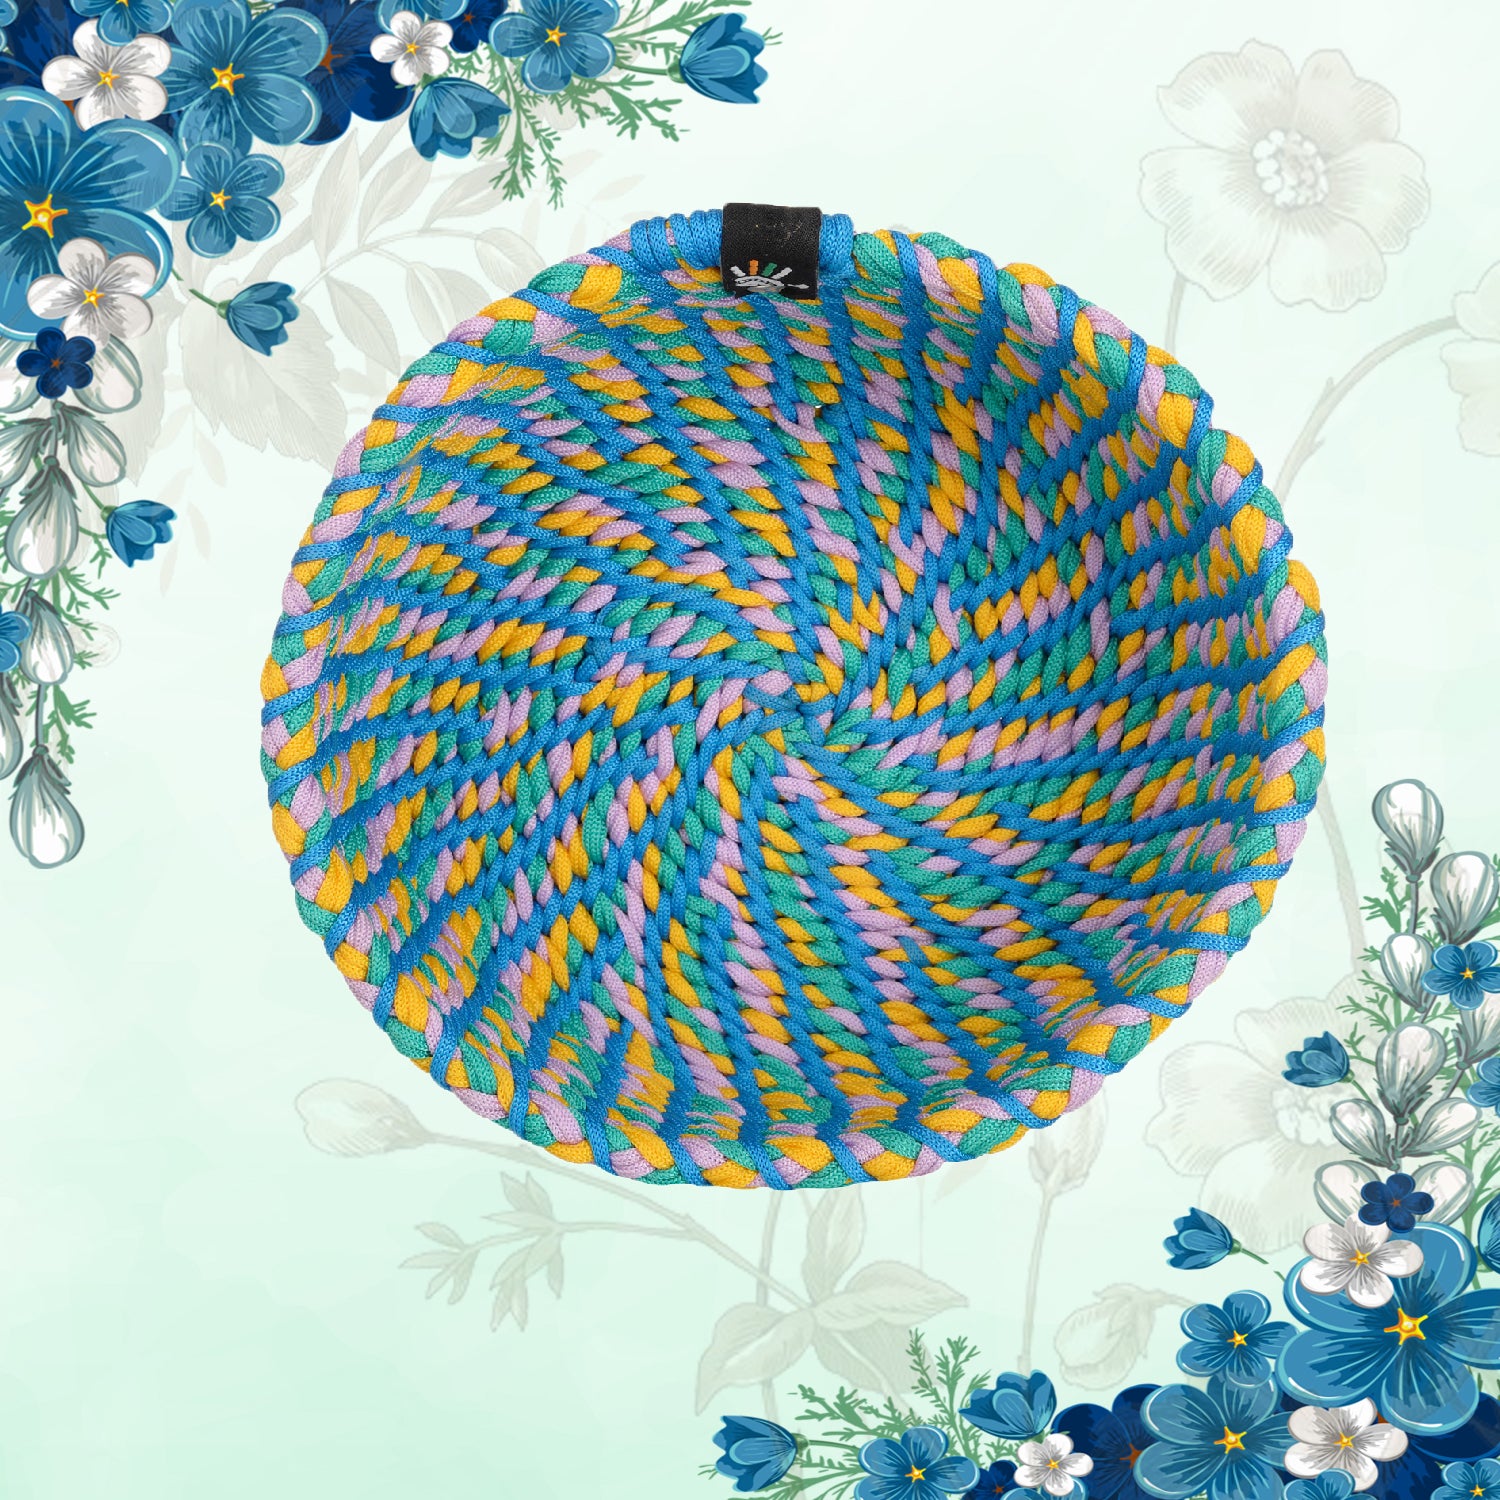 Happy Cultures 'Blue' Yarn Braided Basket